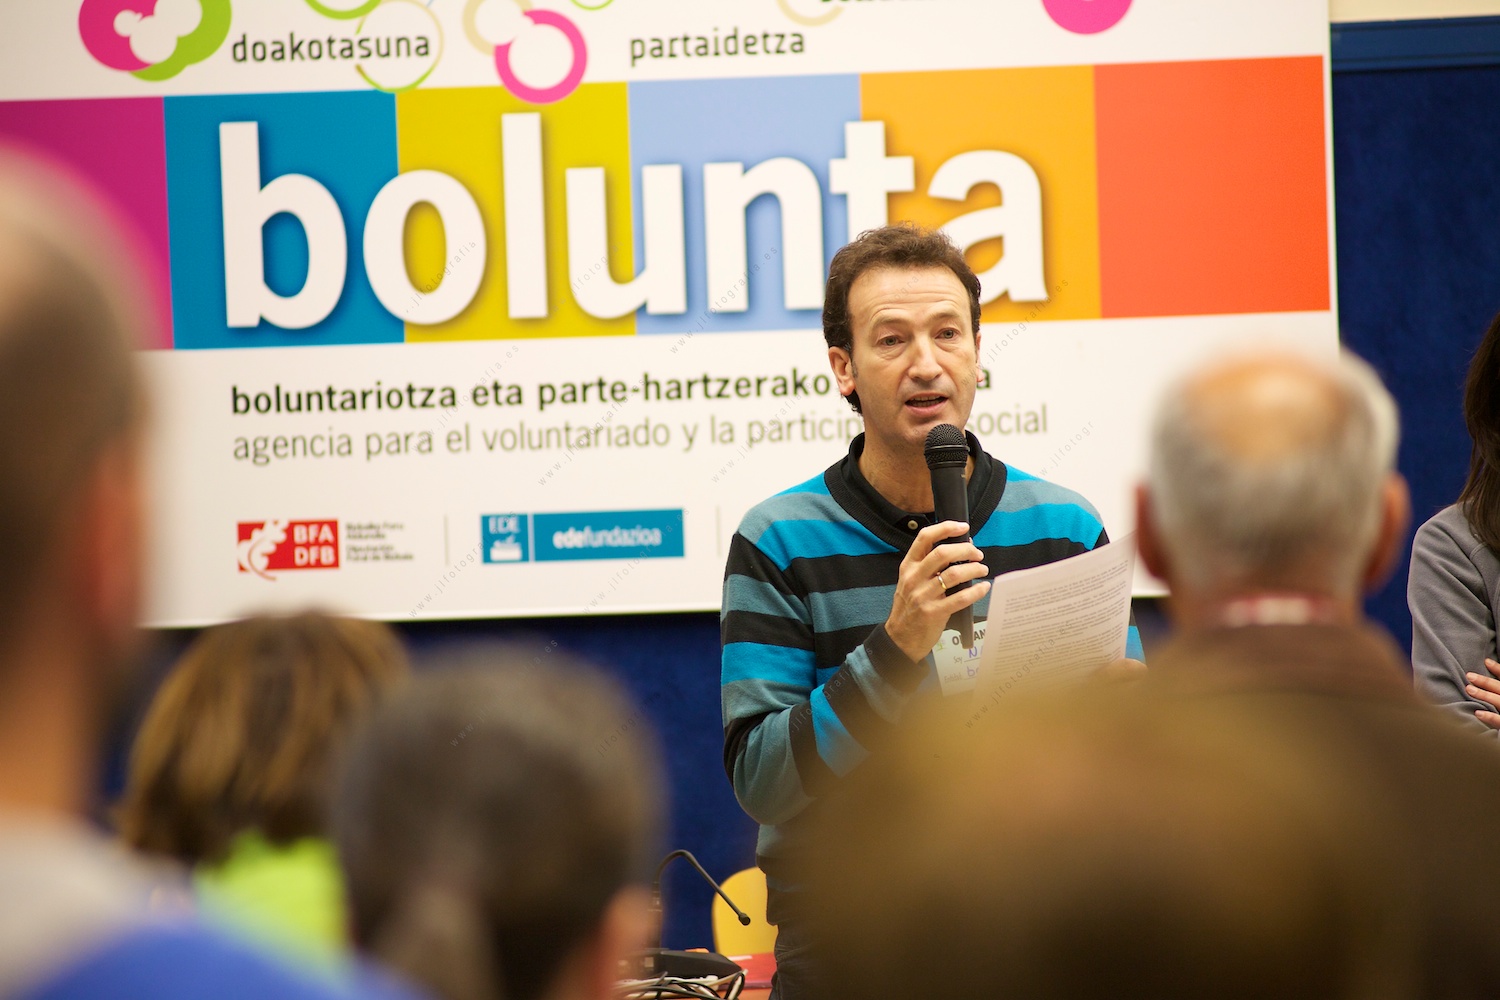 Presentación de la jornada de Bolunta en Bilbao